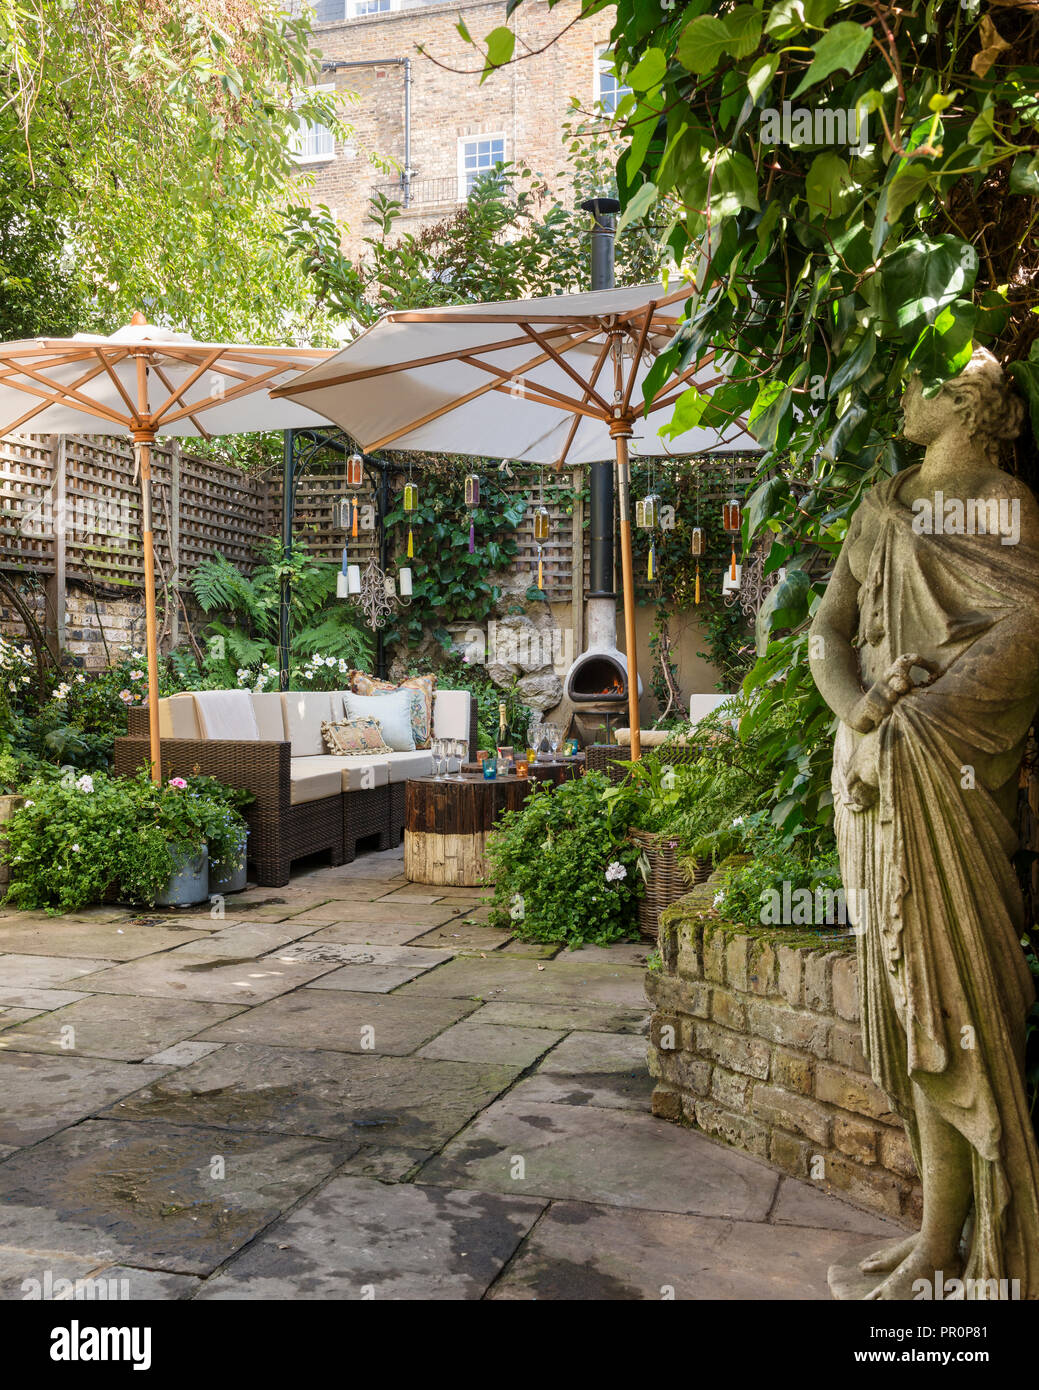 Garten Skulptur in London Garten im Innenhof mit einem Gitter umzäunt und schattigen mit Sonnenschirmen Stockfoto